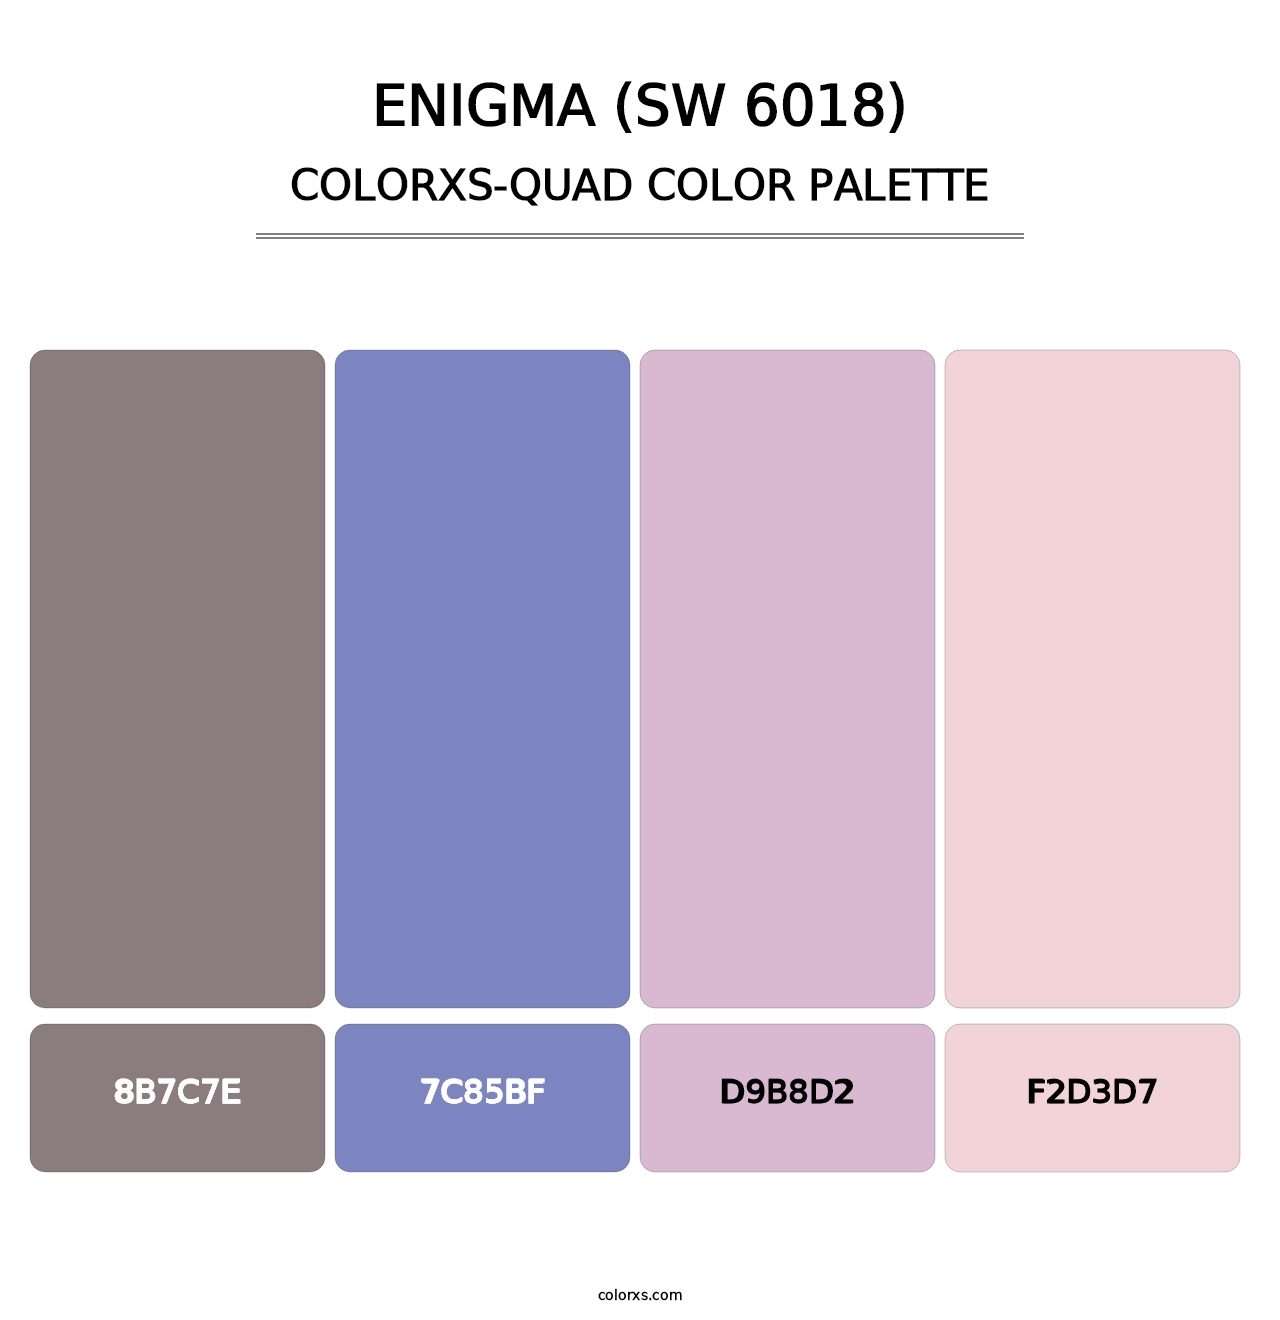 Enigma (SW 6018) - Colorxs Quad Palette